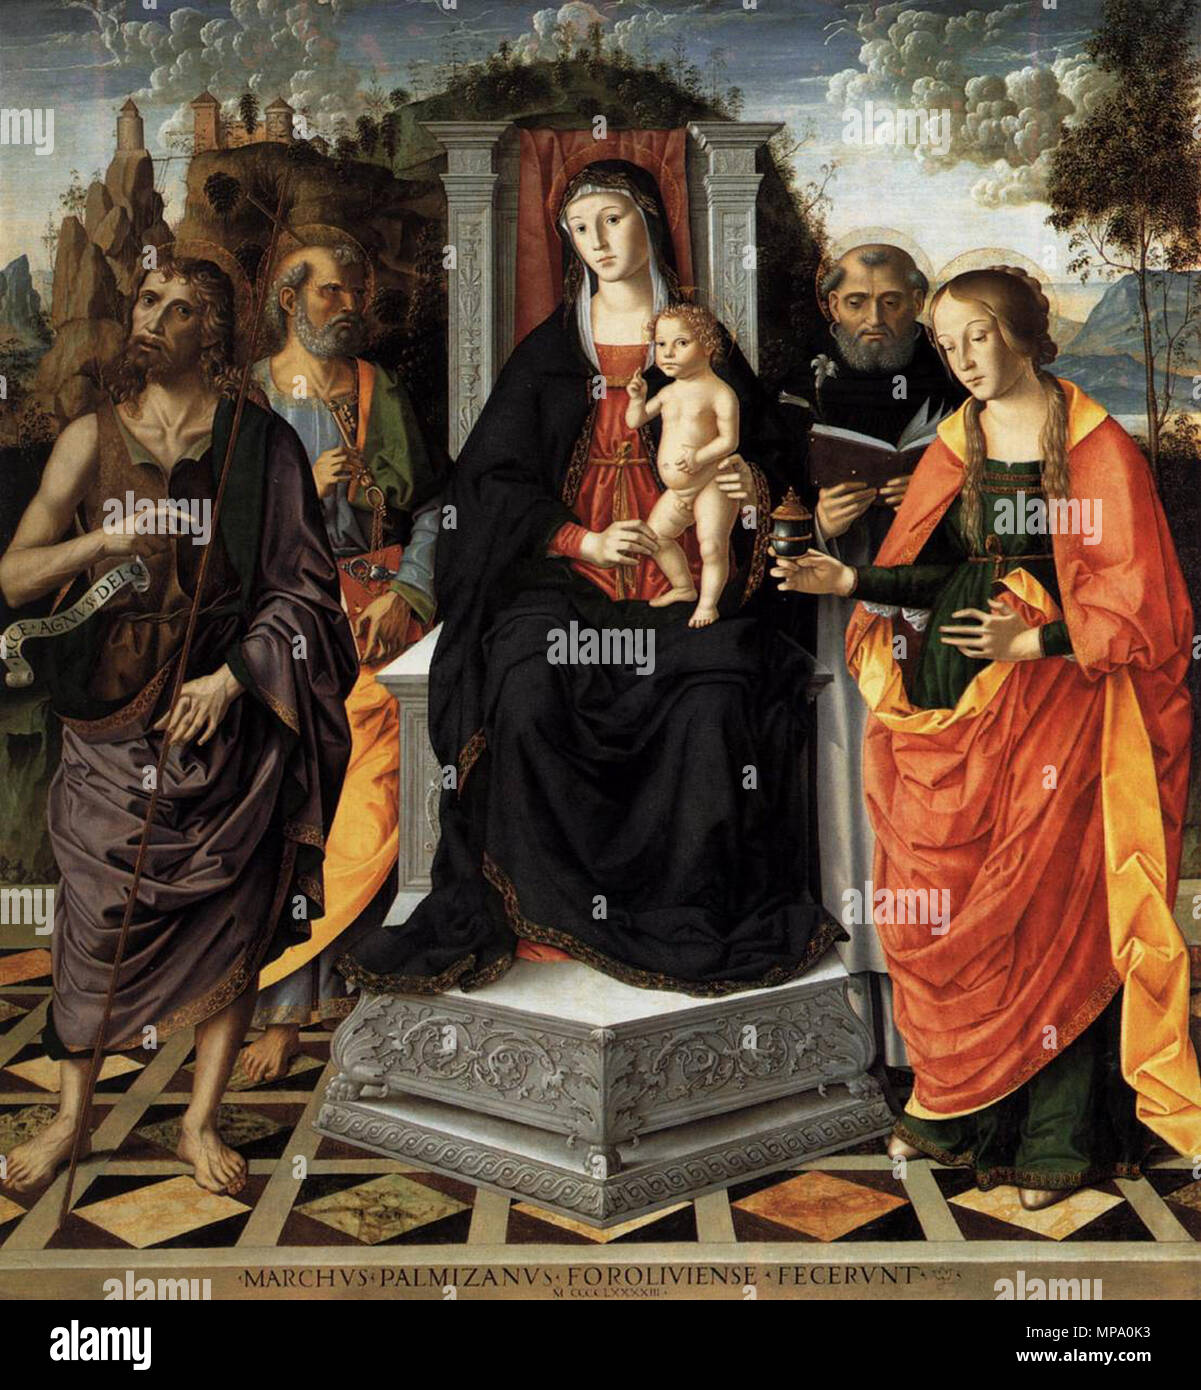 Madonna and Child with Saints   1493.   854 Marco palmezzano, sacra conversazione di Brera Stock Photo